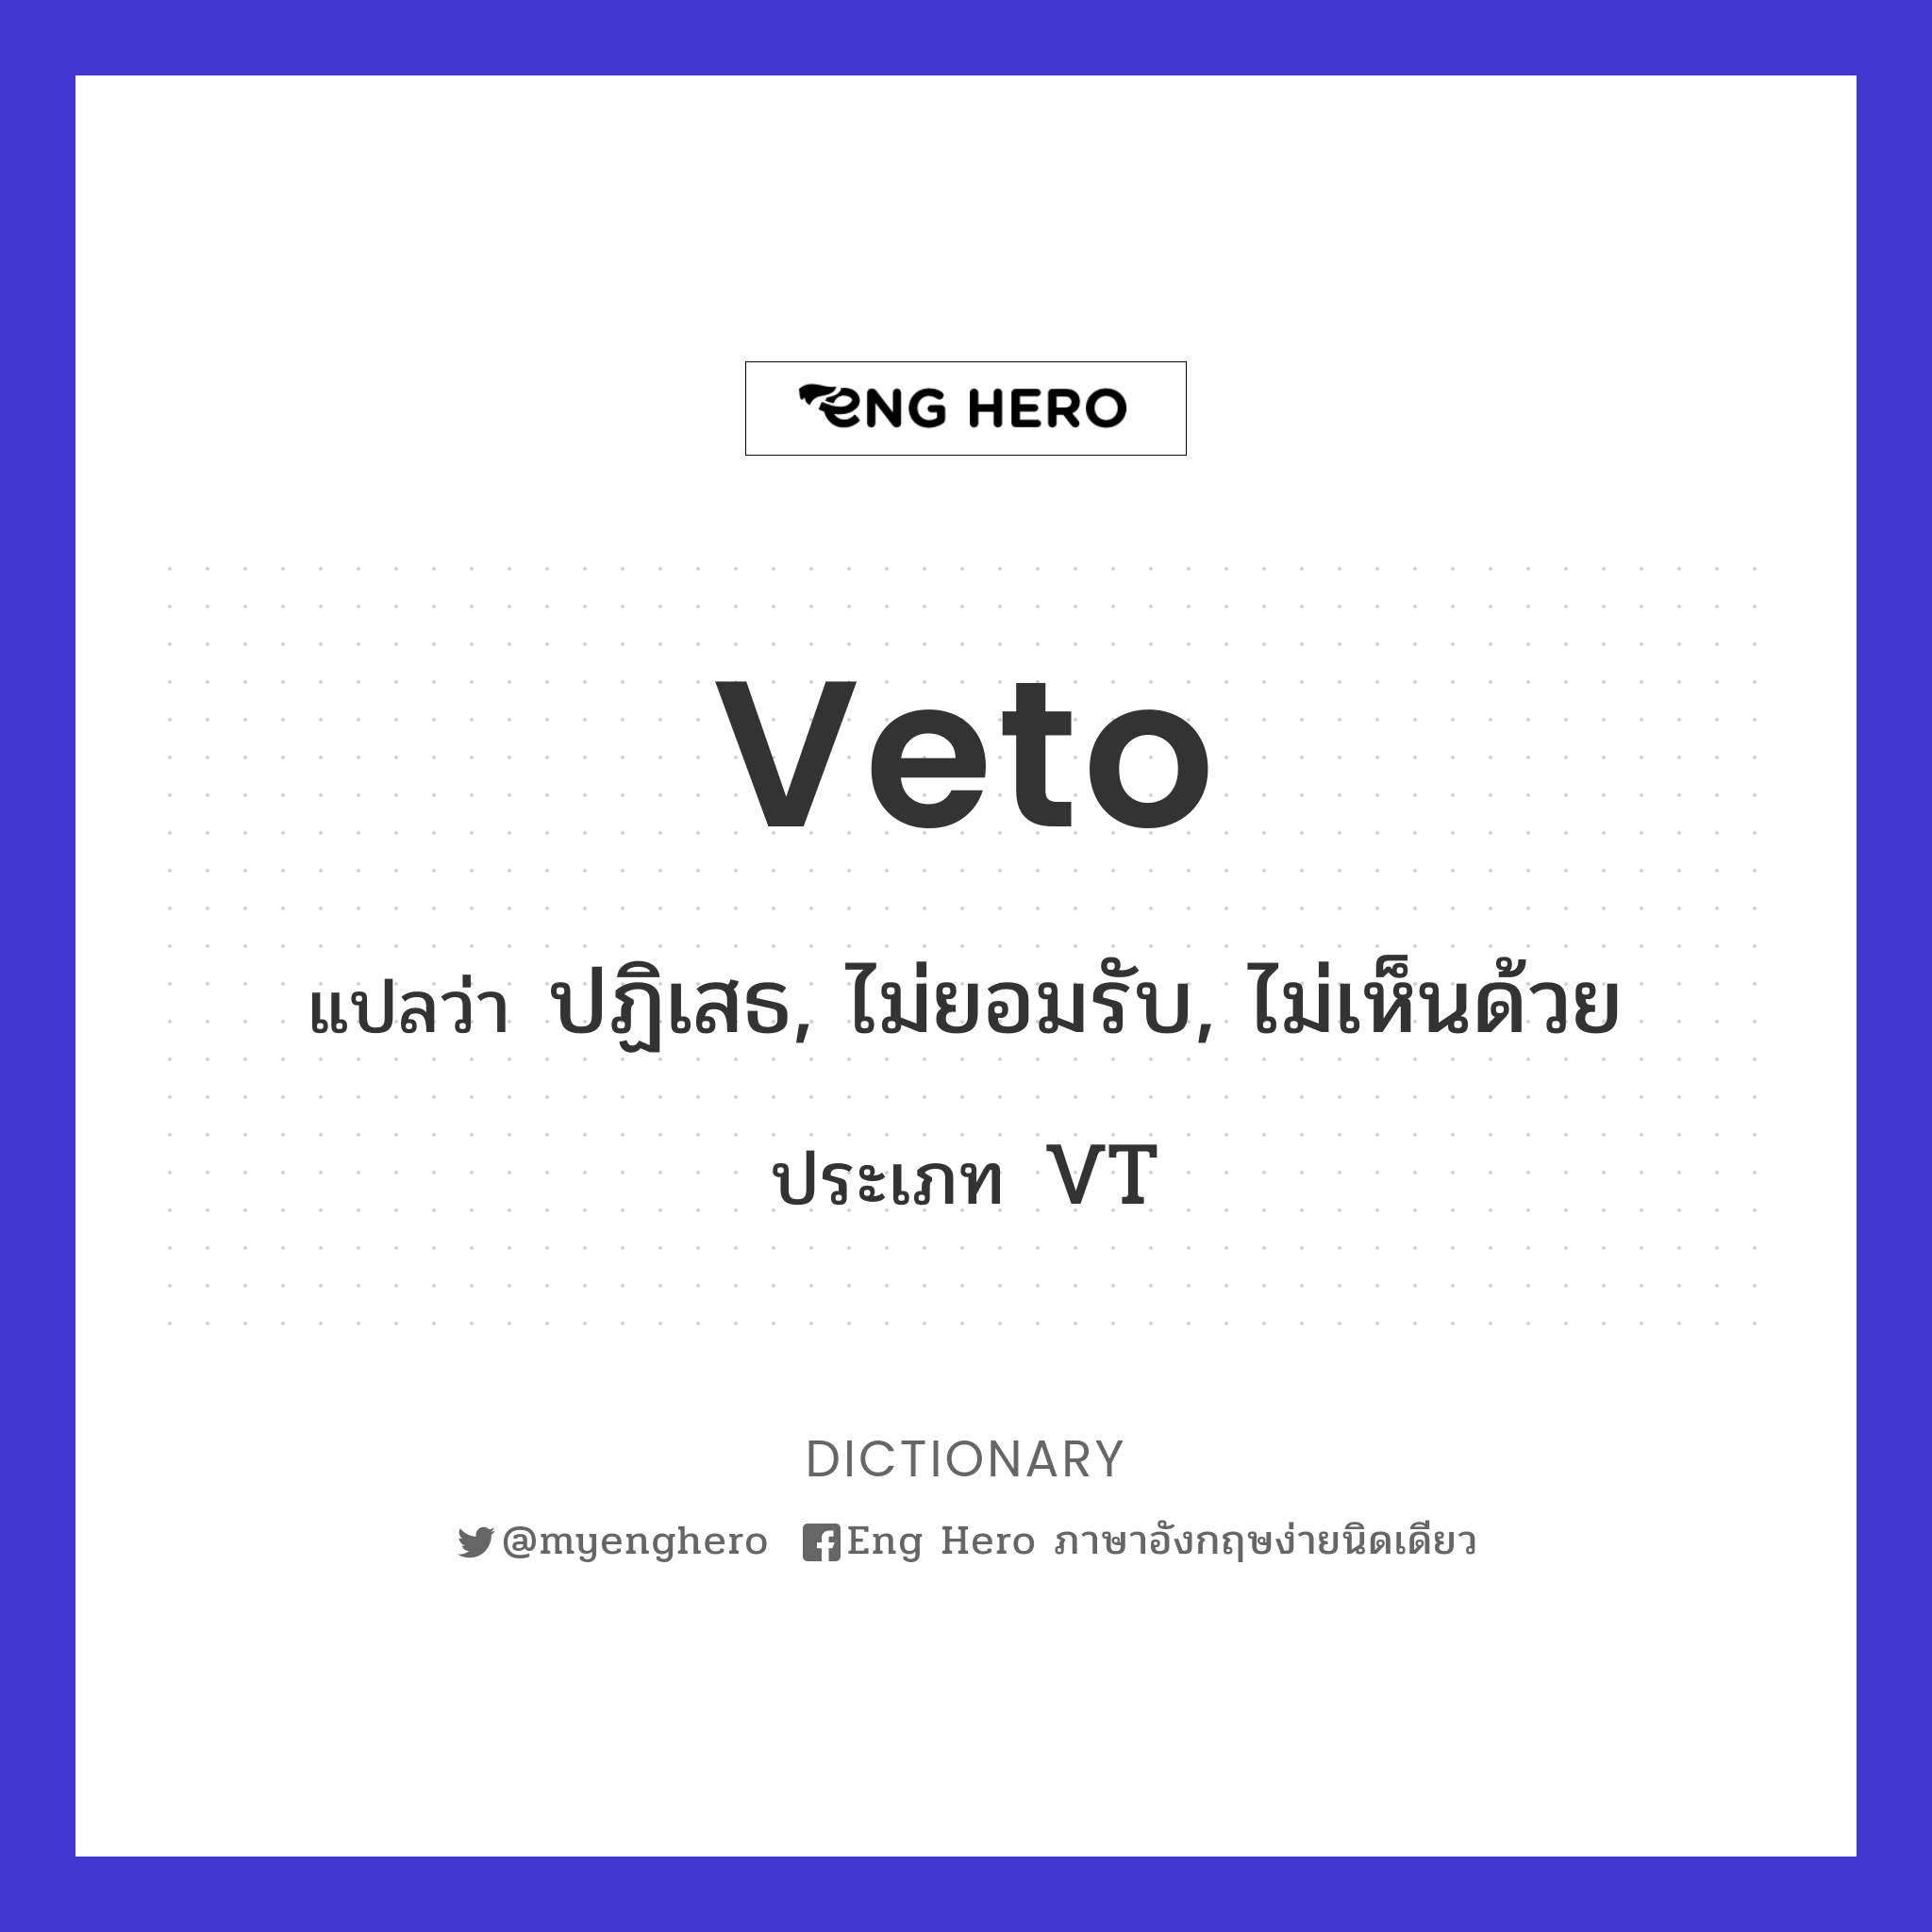 veto